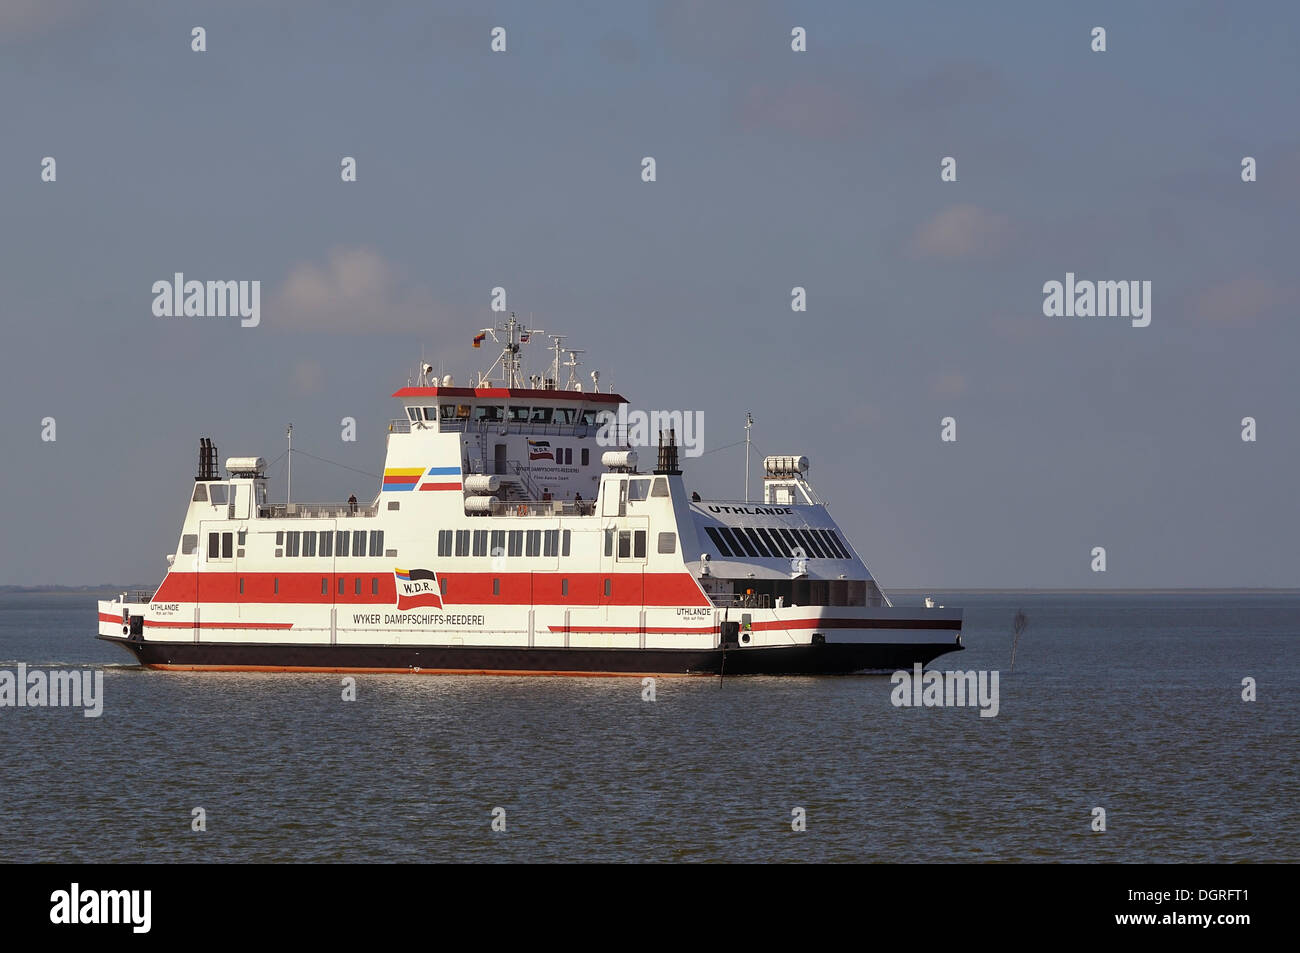 Fähren Der wyker Dampf Reederei zu foehr Insel, dagebuell, Nordfriesland,  Schleswig- Holstein Stockfotografie - Alamy